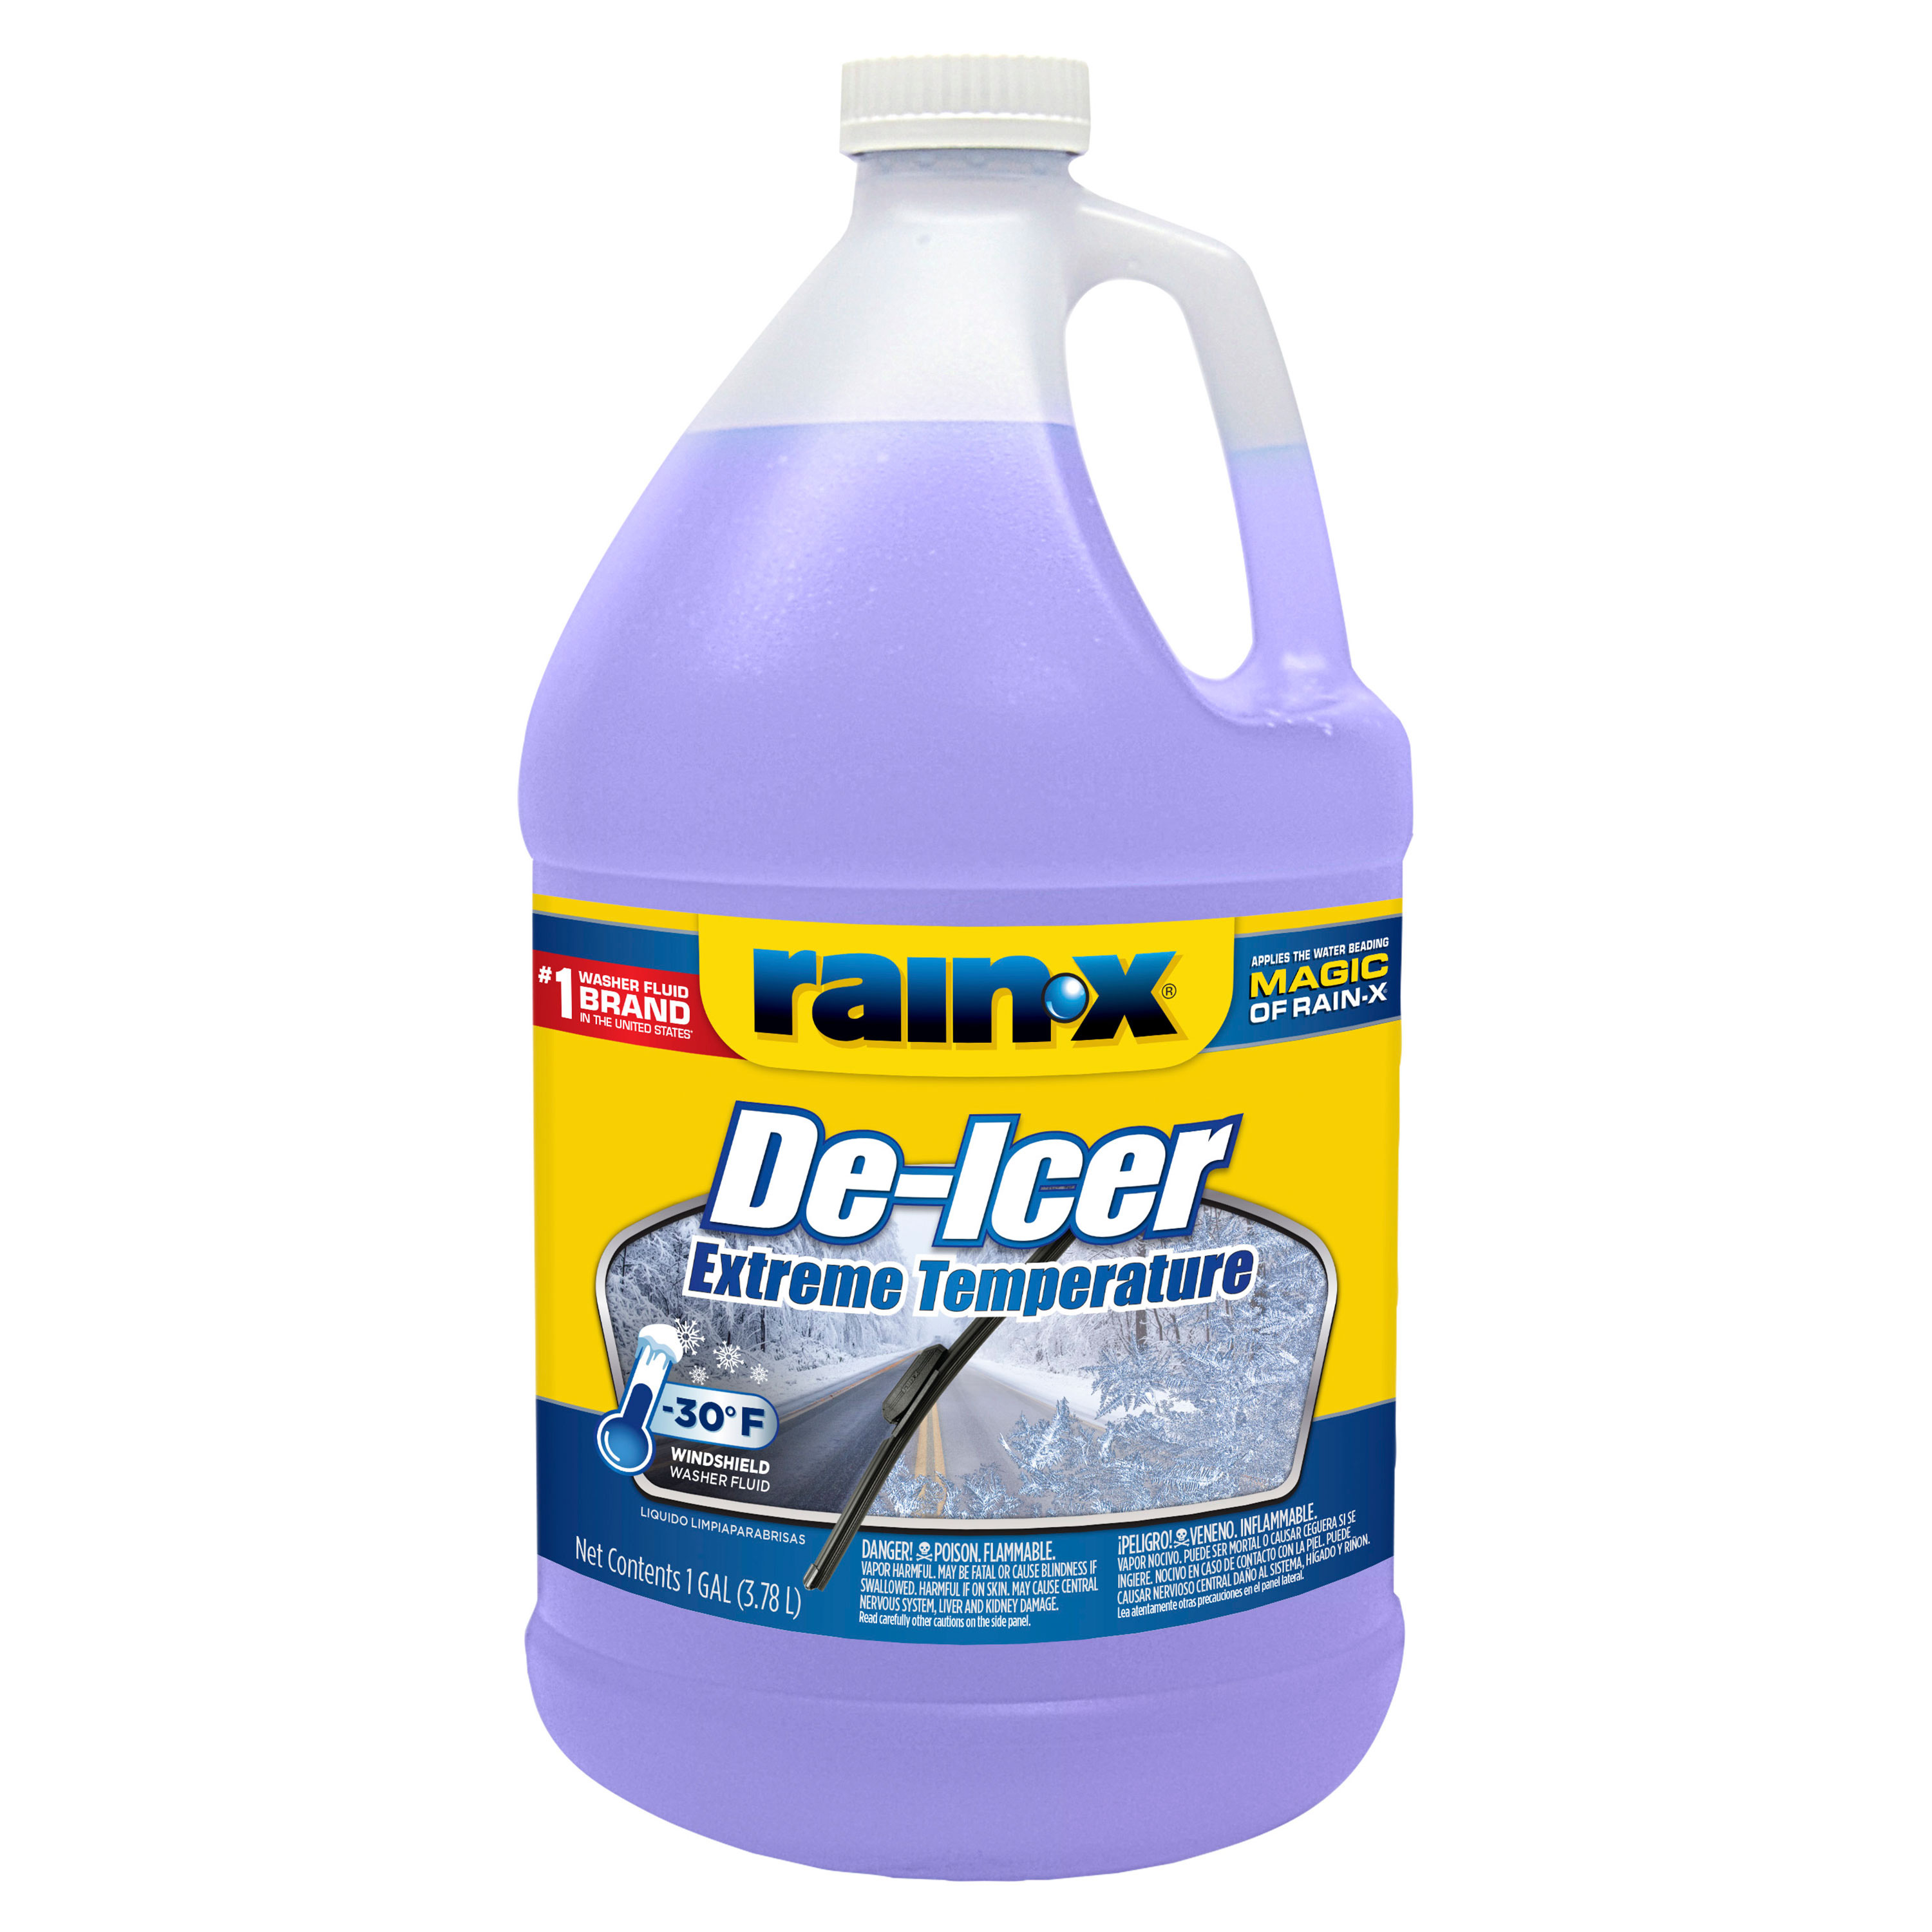 Rain-X De-Icer Wiper Fluid $1.00 at Walmart YMMV